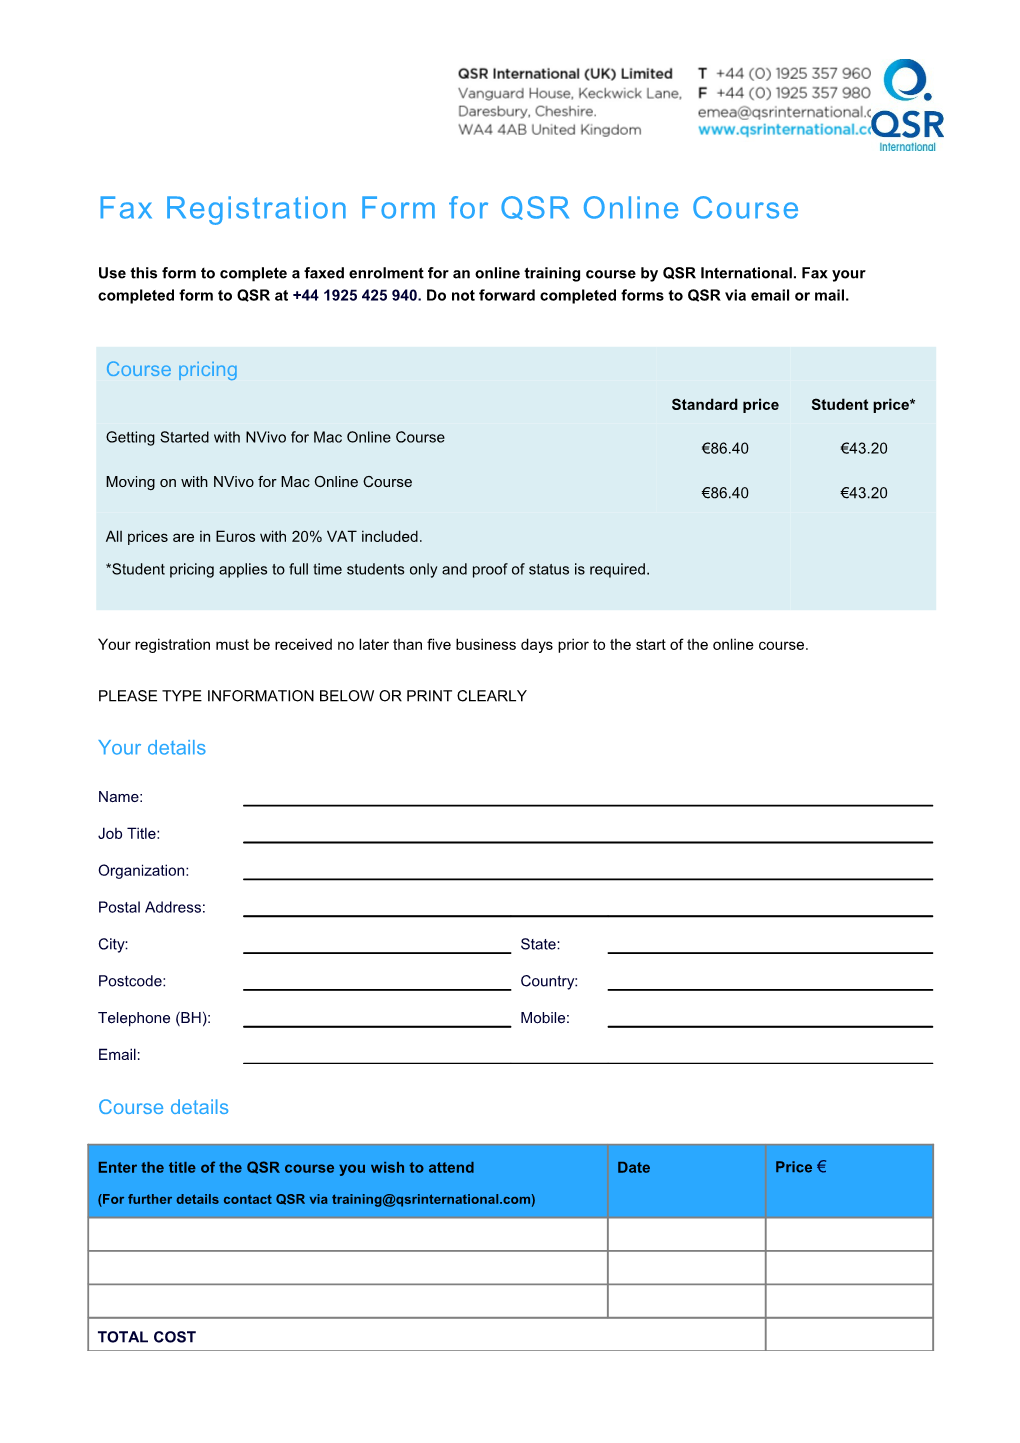 Fax Registration Form for QSR Eworkshop (US)